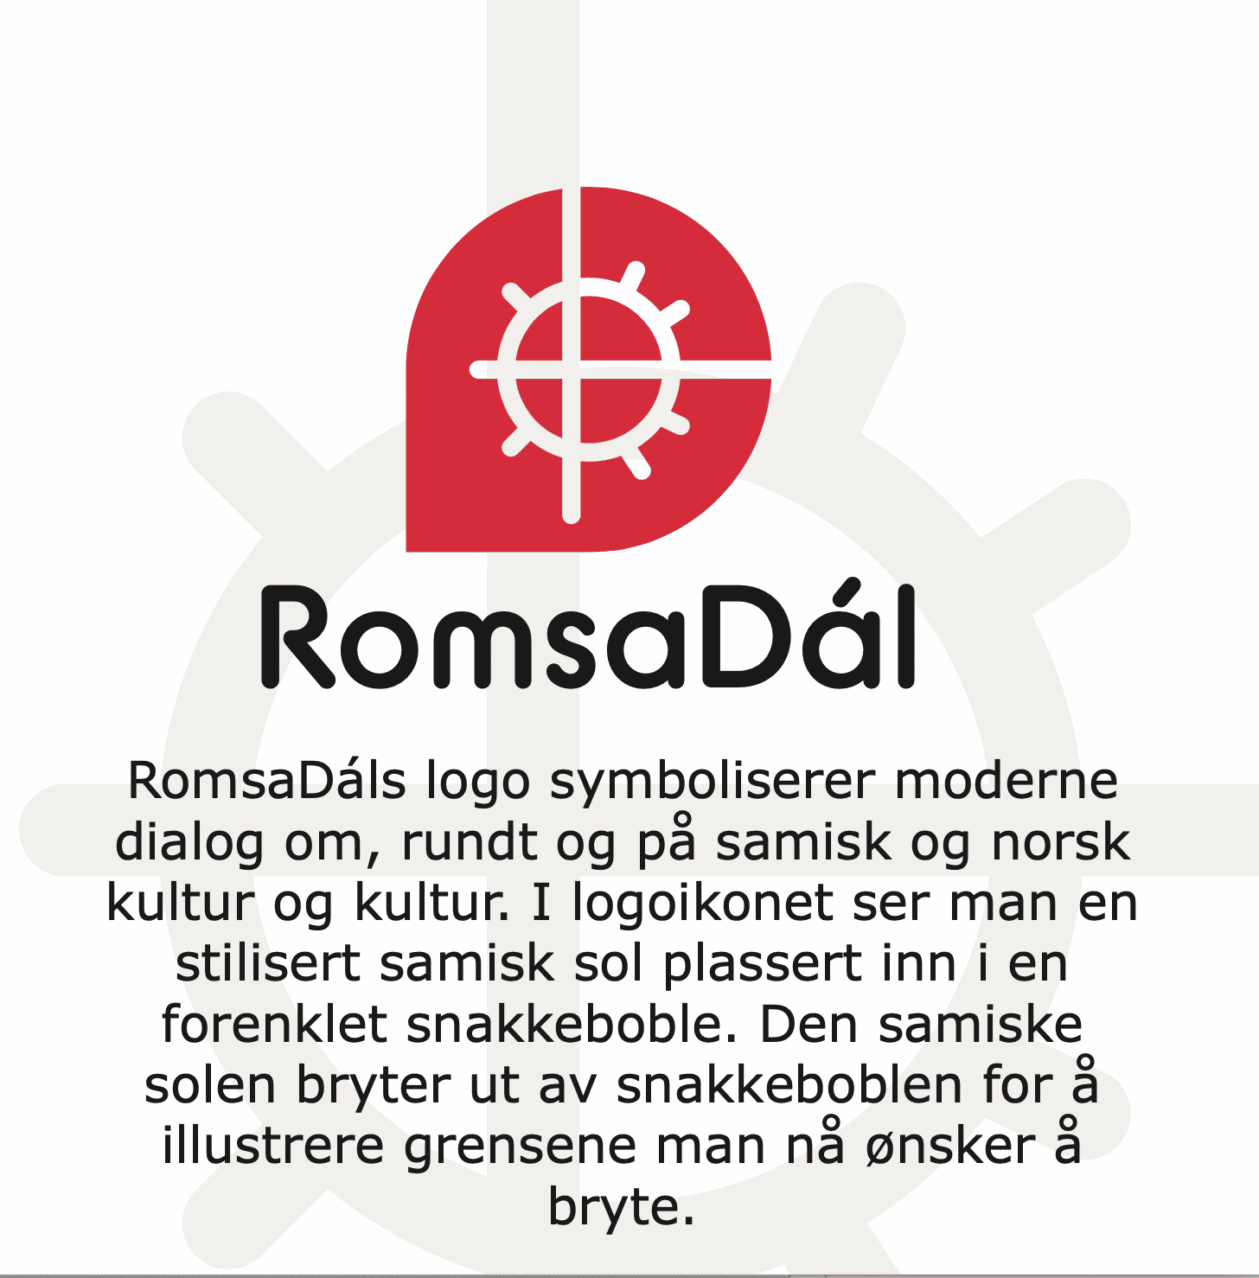 RomsaDál logo og betydning